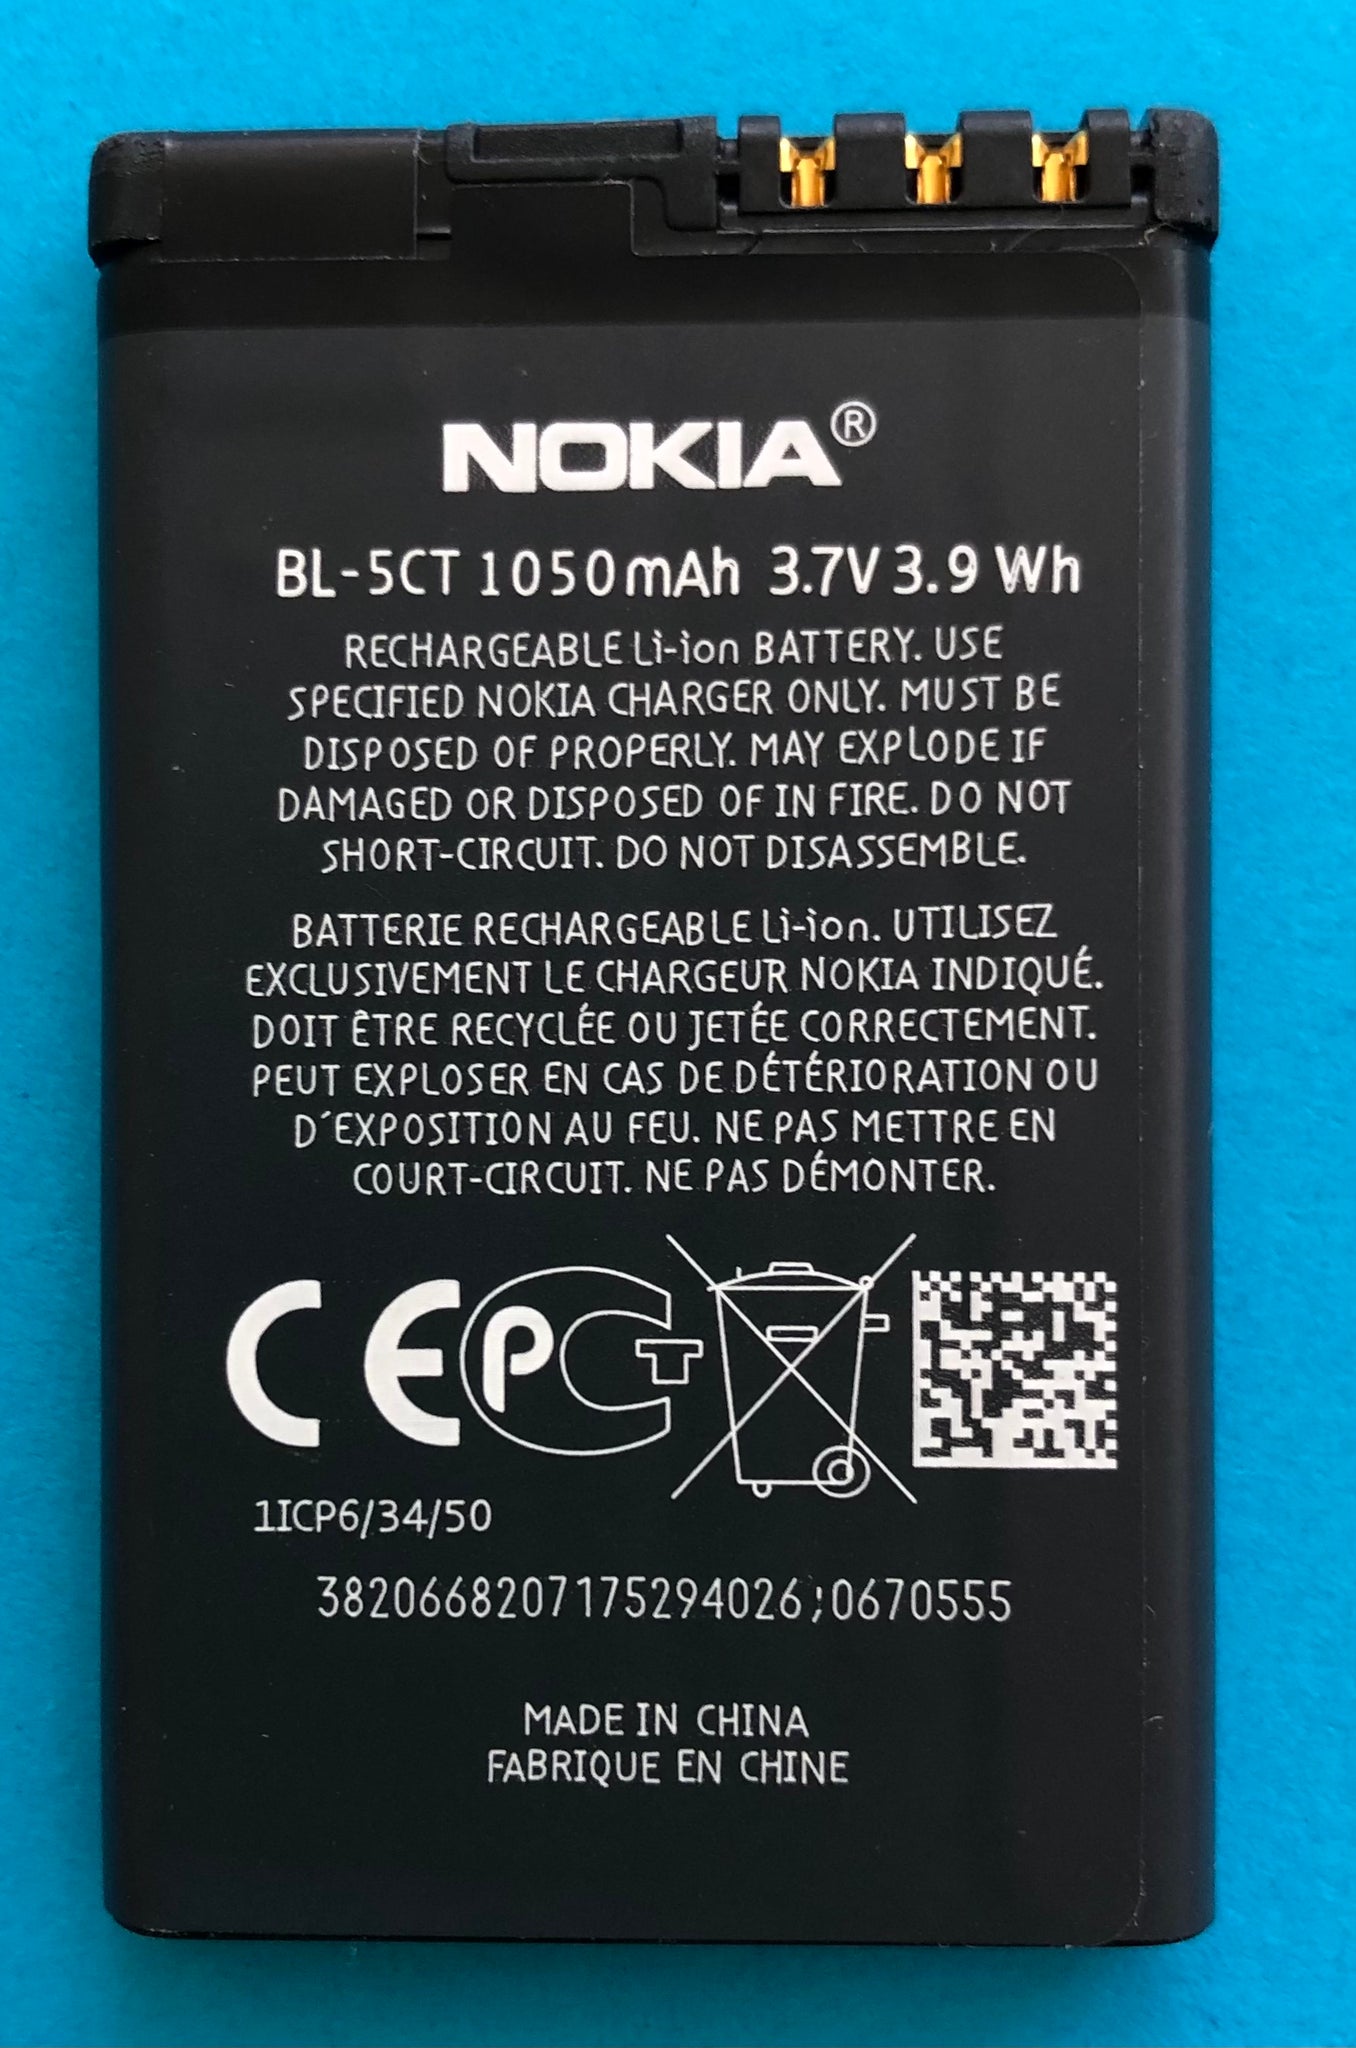 Batterie BL-5CT 1100mAh pour téléphone portable Nokia 6303, 5220, 3720,  6730, 6303i, C5-00, C3-01 Touch and Type